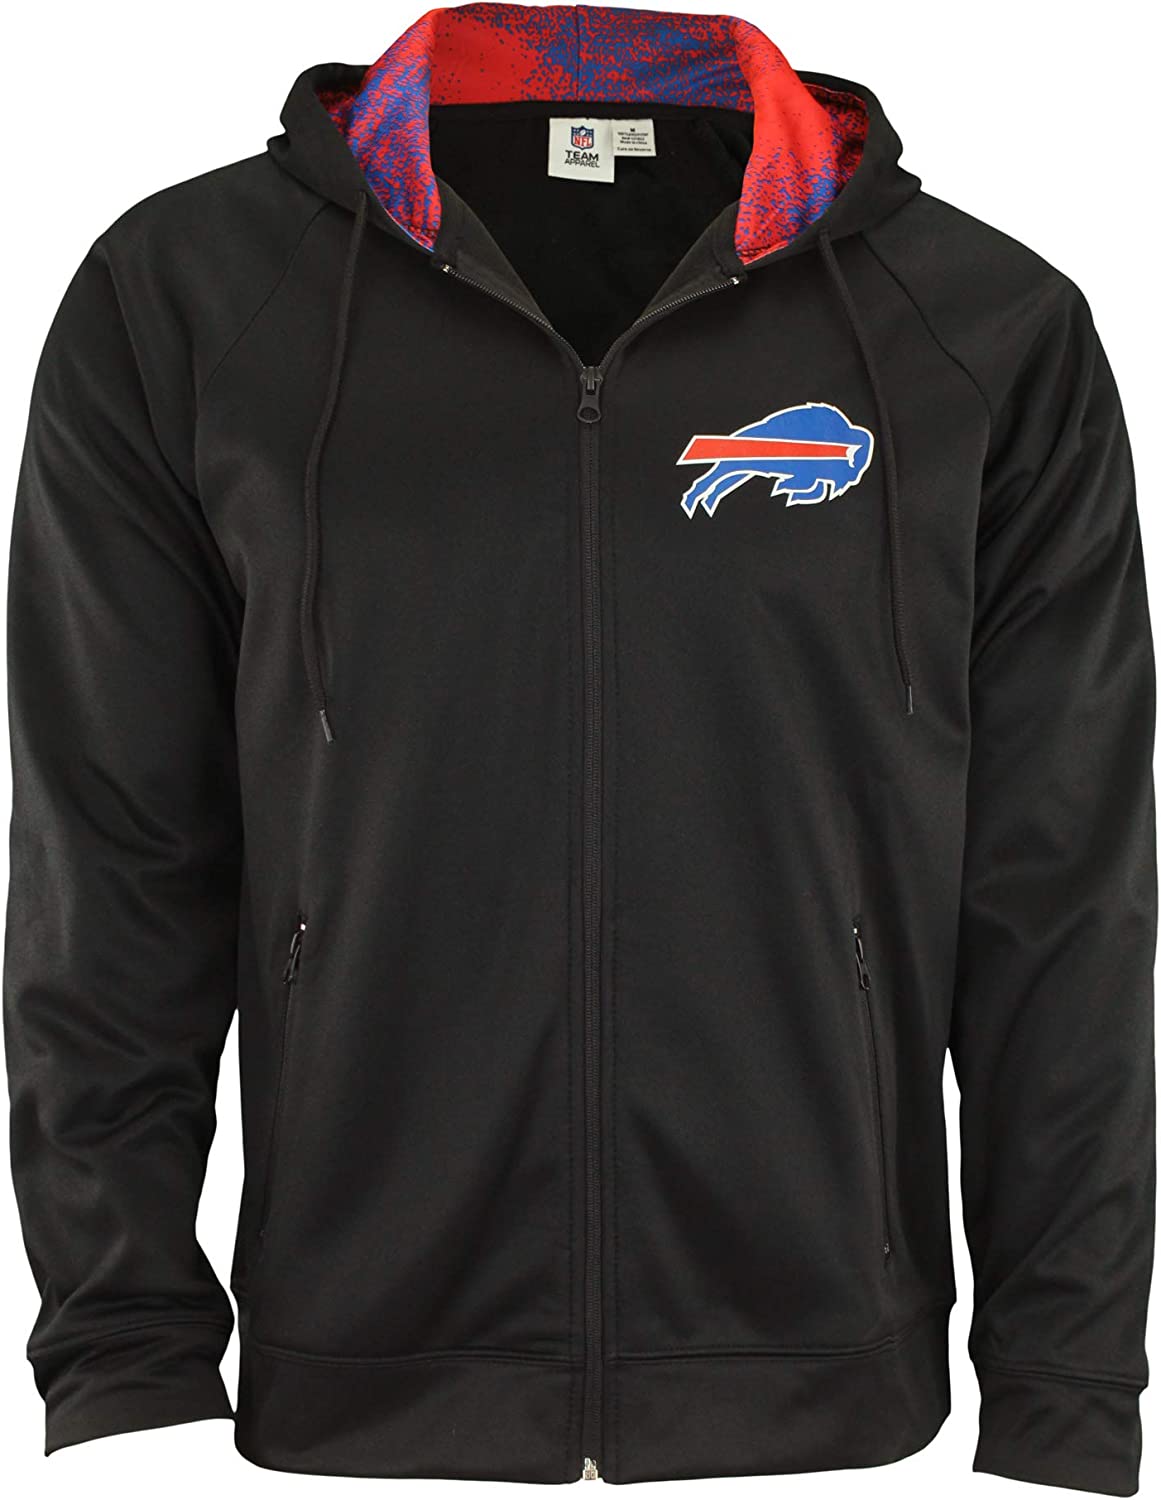 Zubaz NFL Men's Full Zip Fleece Hoodie Jacket, Black Soft Hooded Sweater